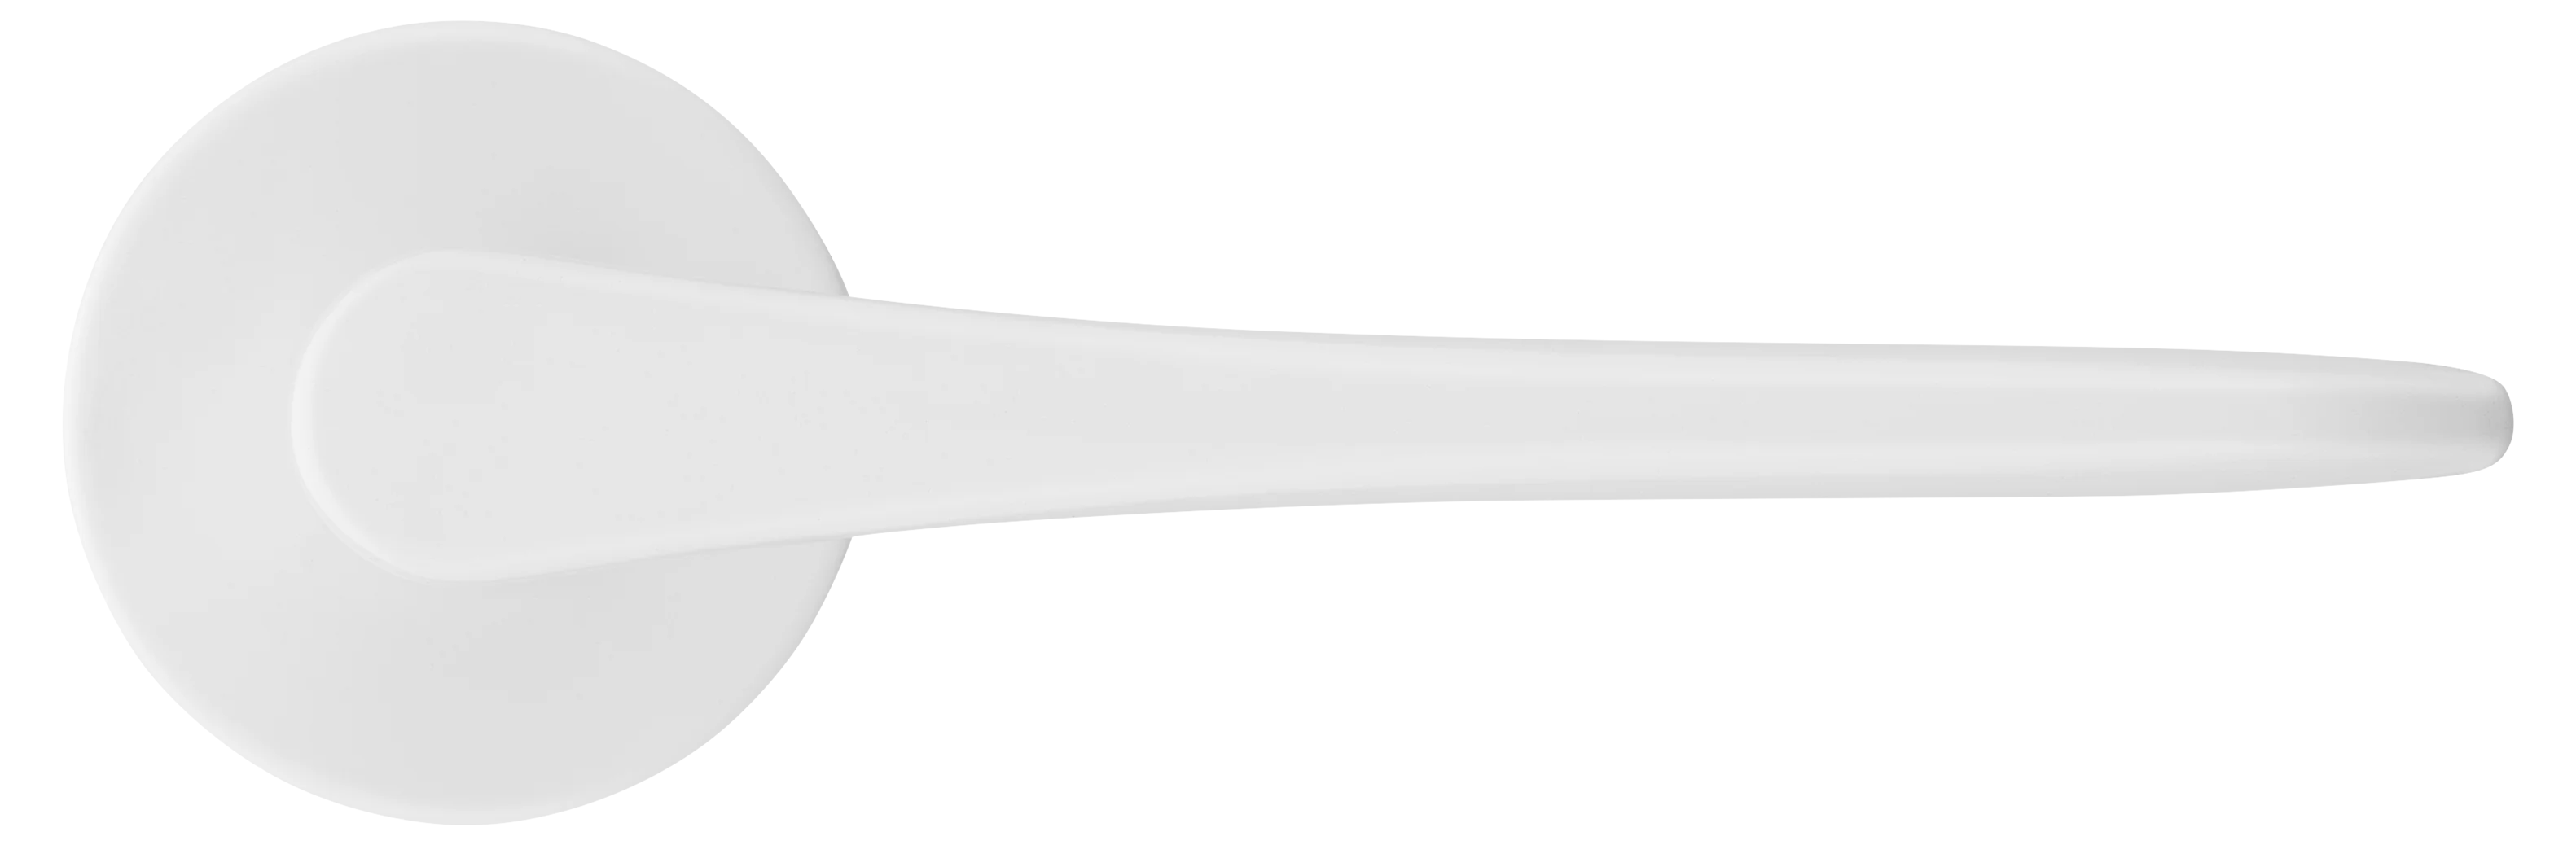 AULA R5 BIA, ручка дверная на розетке 7мм, цвет -  белый фото купить в Оренбурге